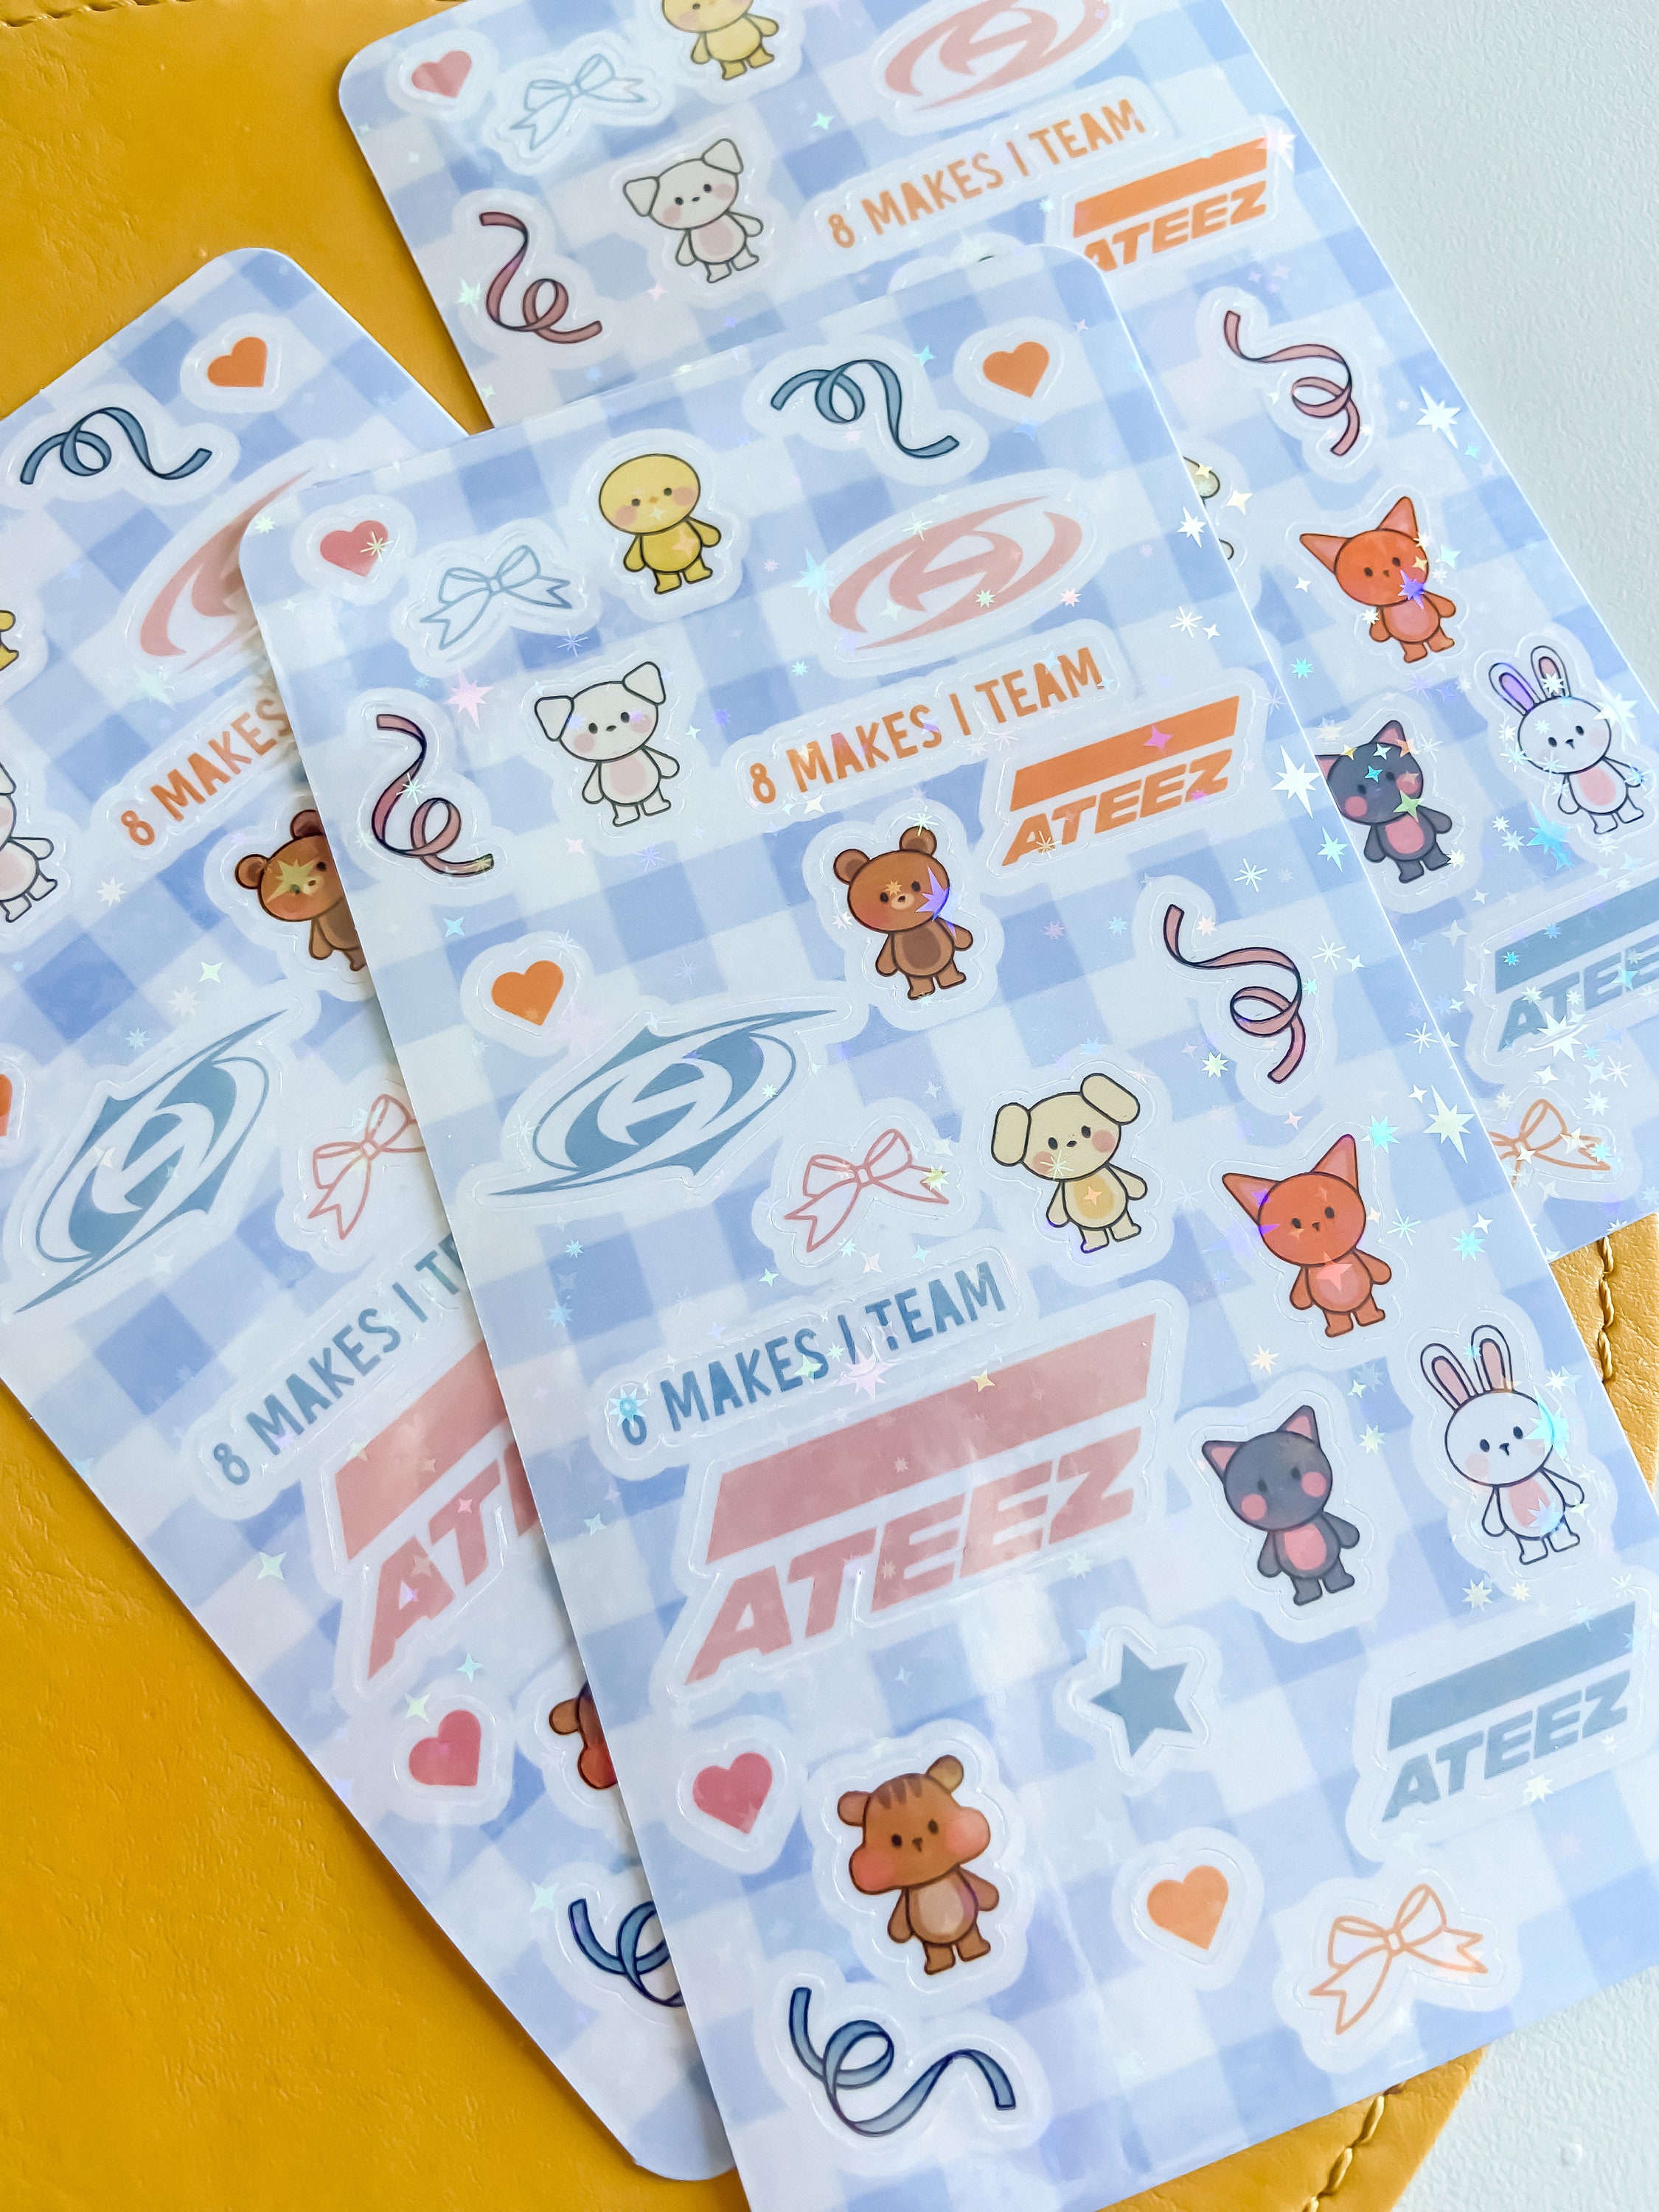 ATEEZ STICKERS, 92 Assorted Ateez Stickers, Ateez Fever Stickers